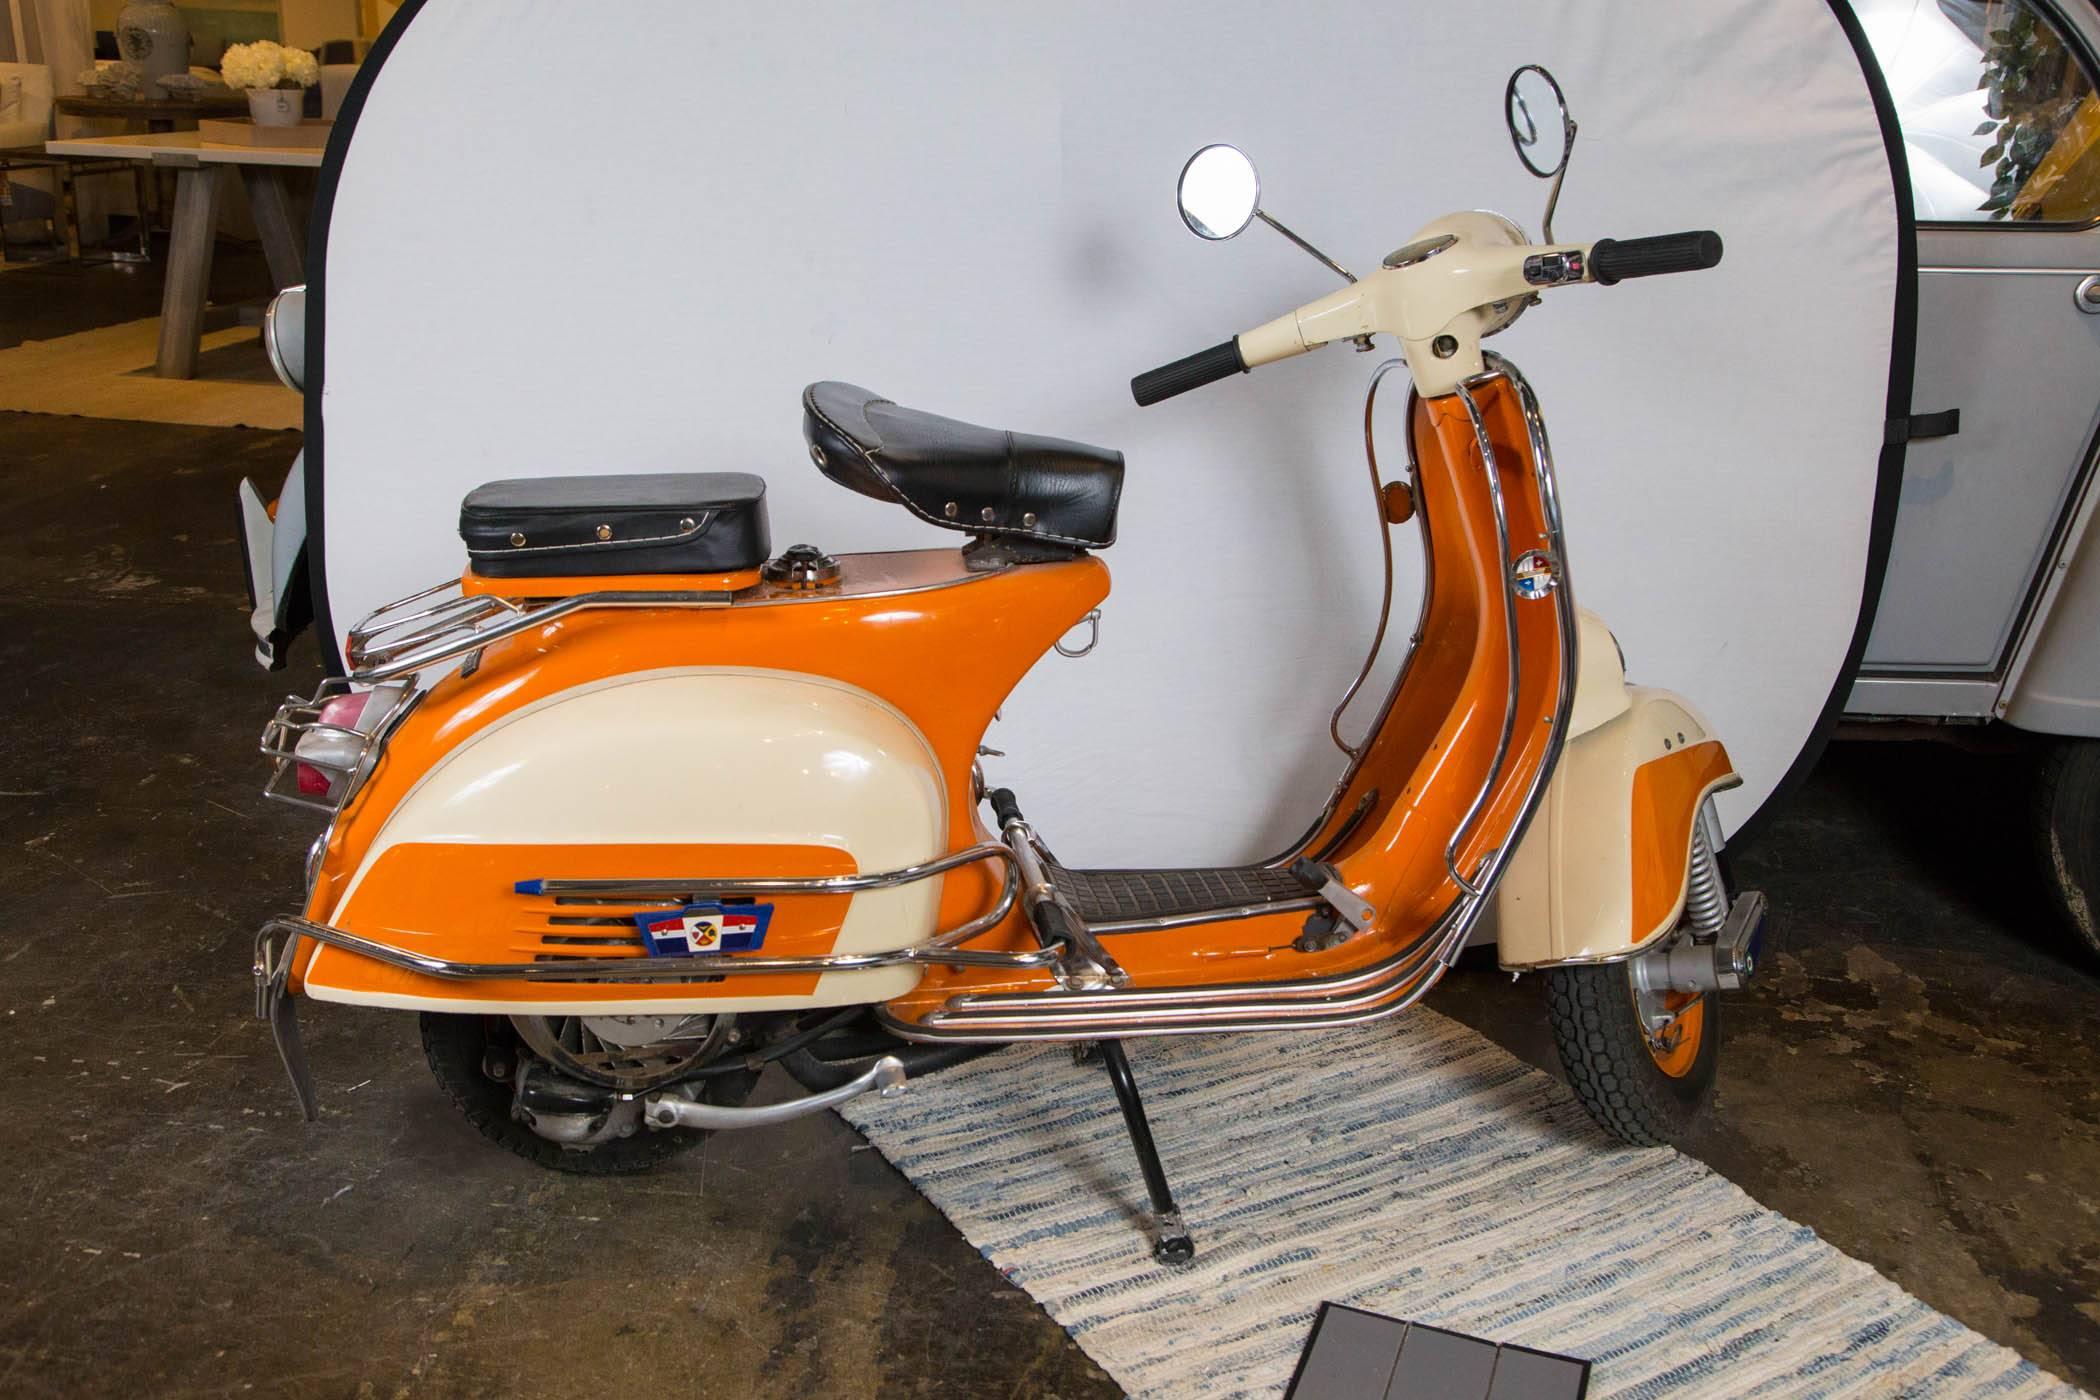 1960s Vespa scooter.